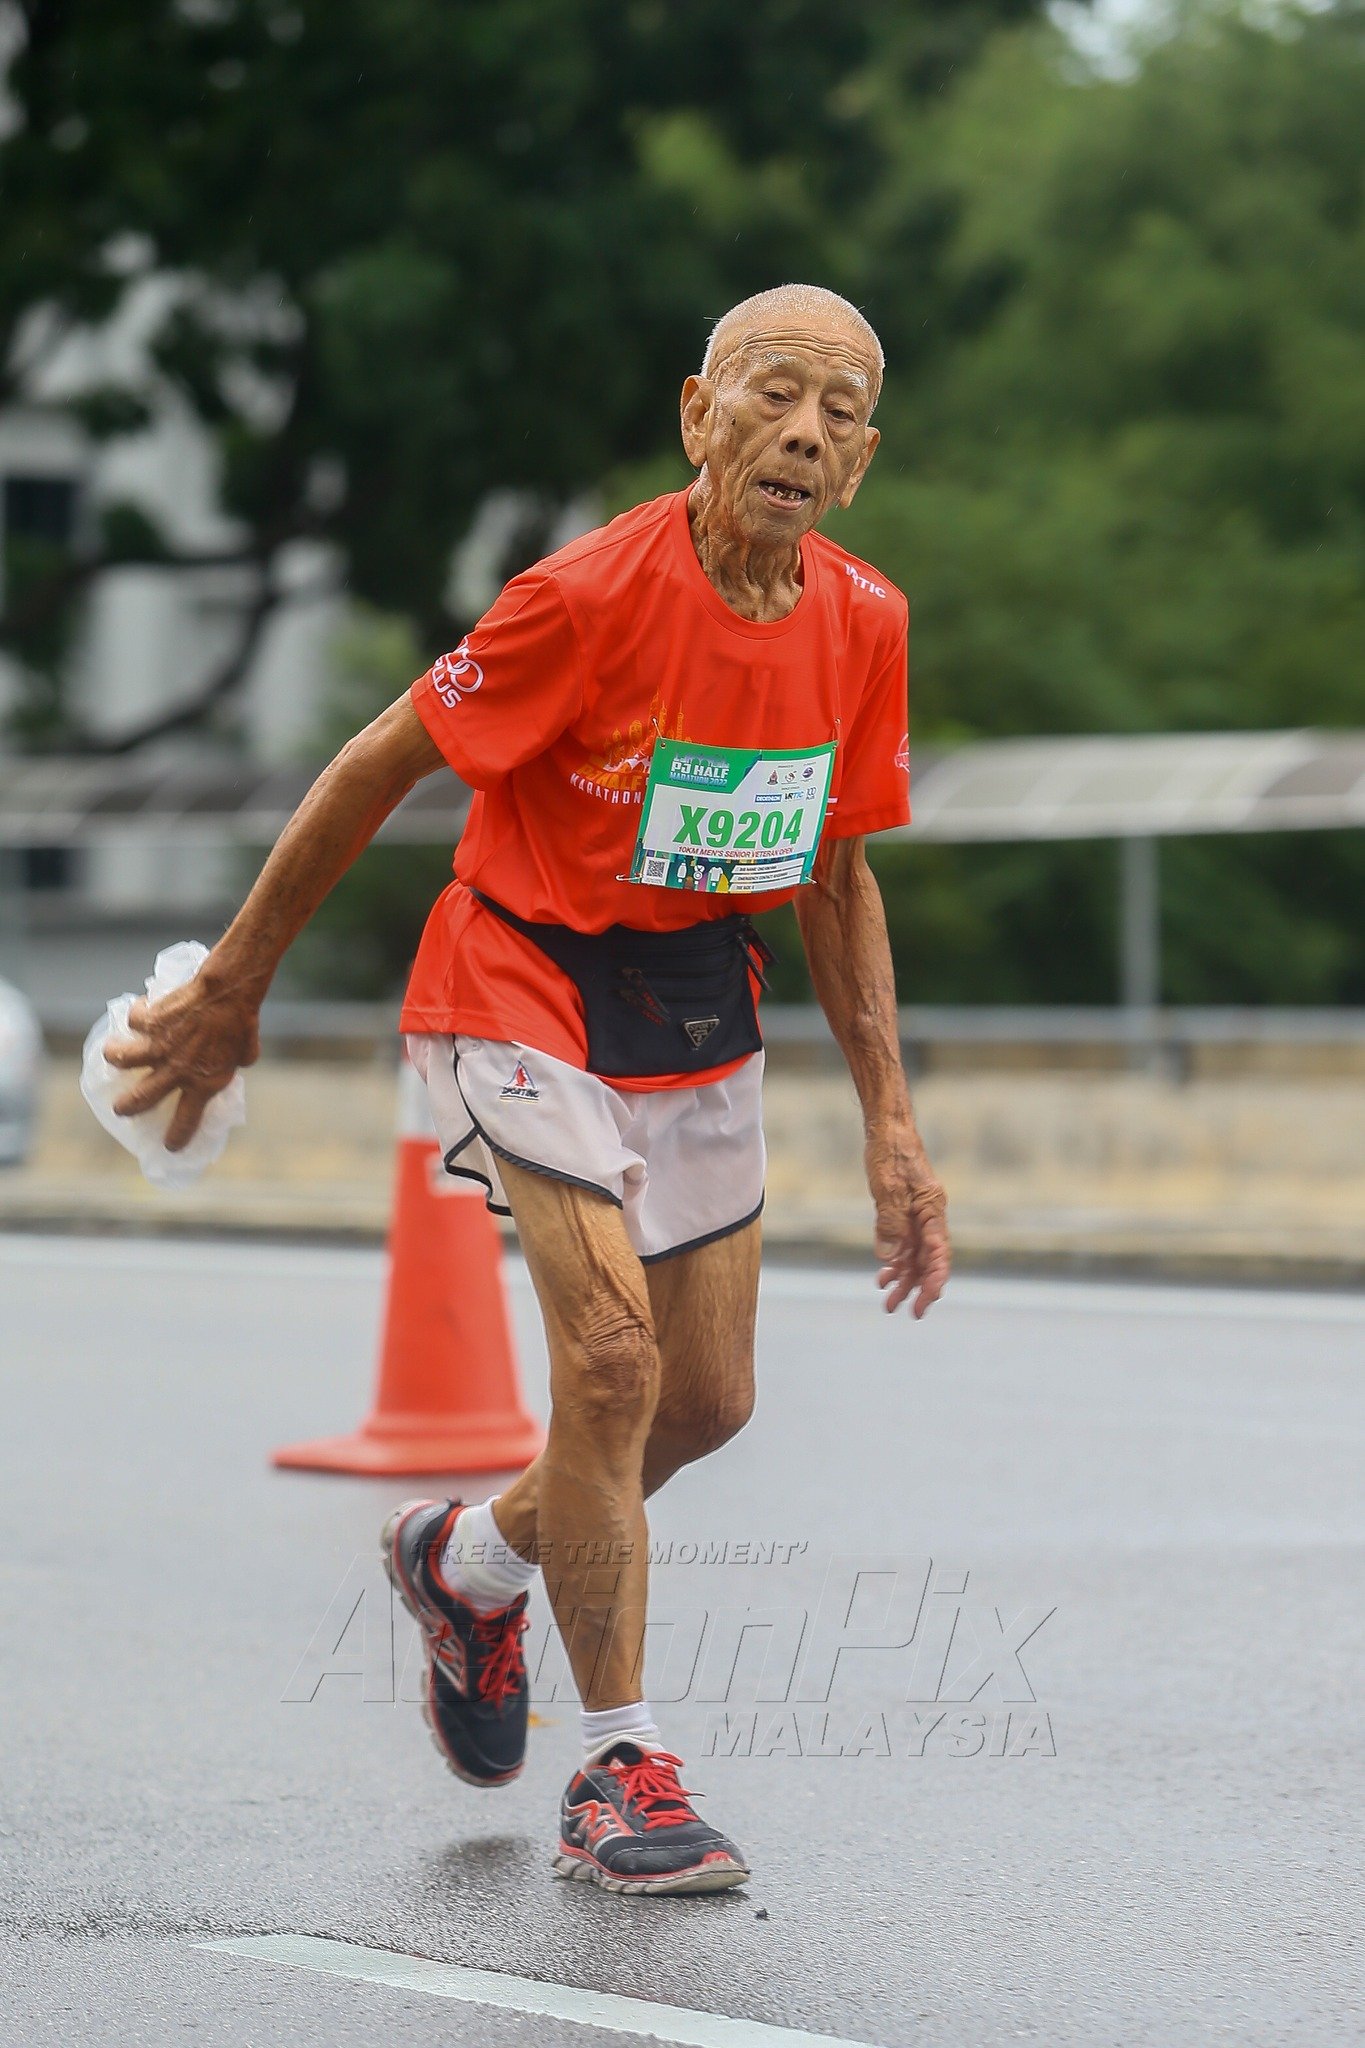 88-year-old man run 